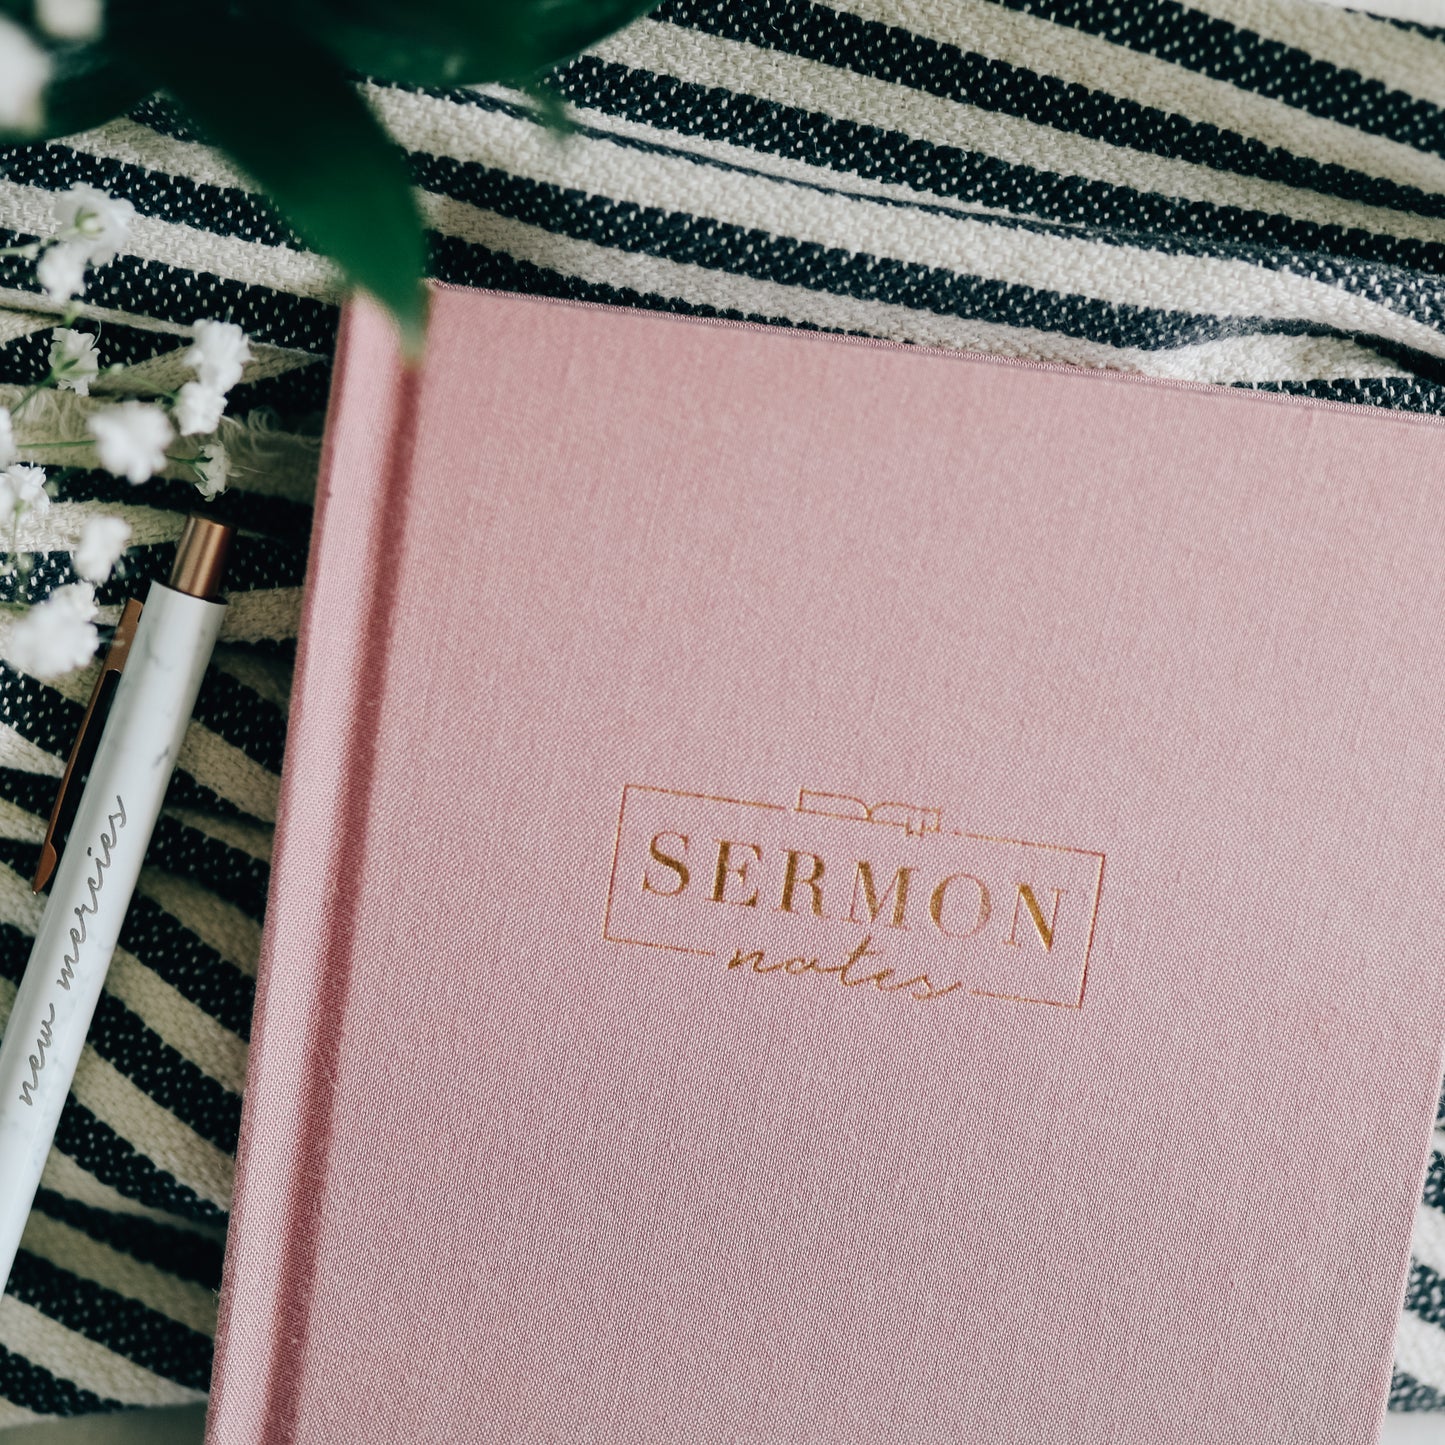 Sermon Notes Journal - Pink Linen